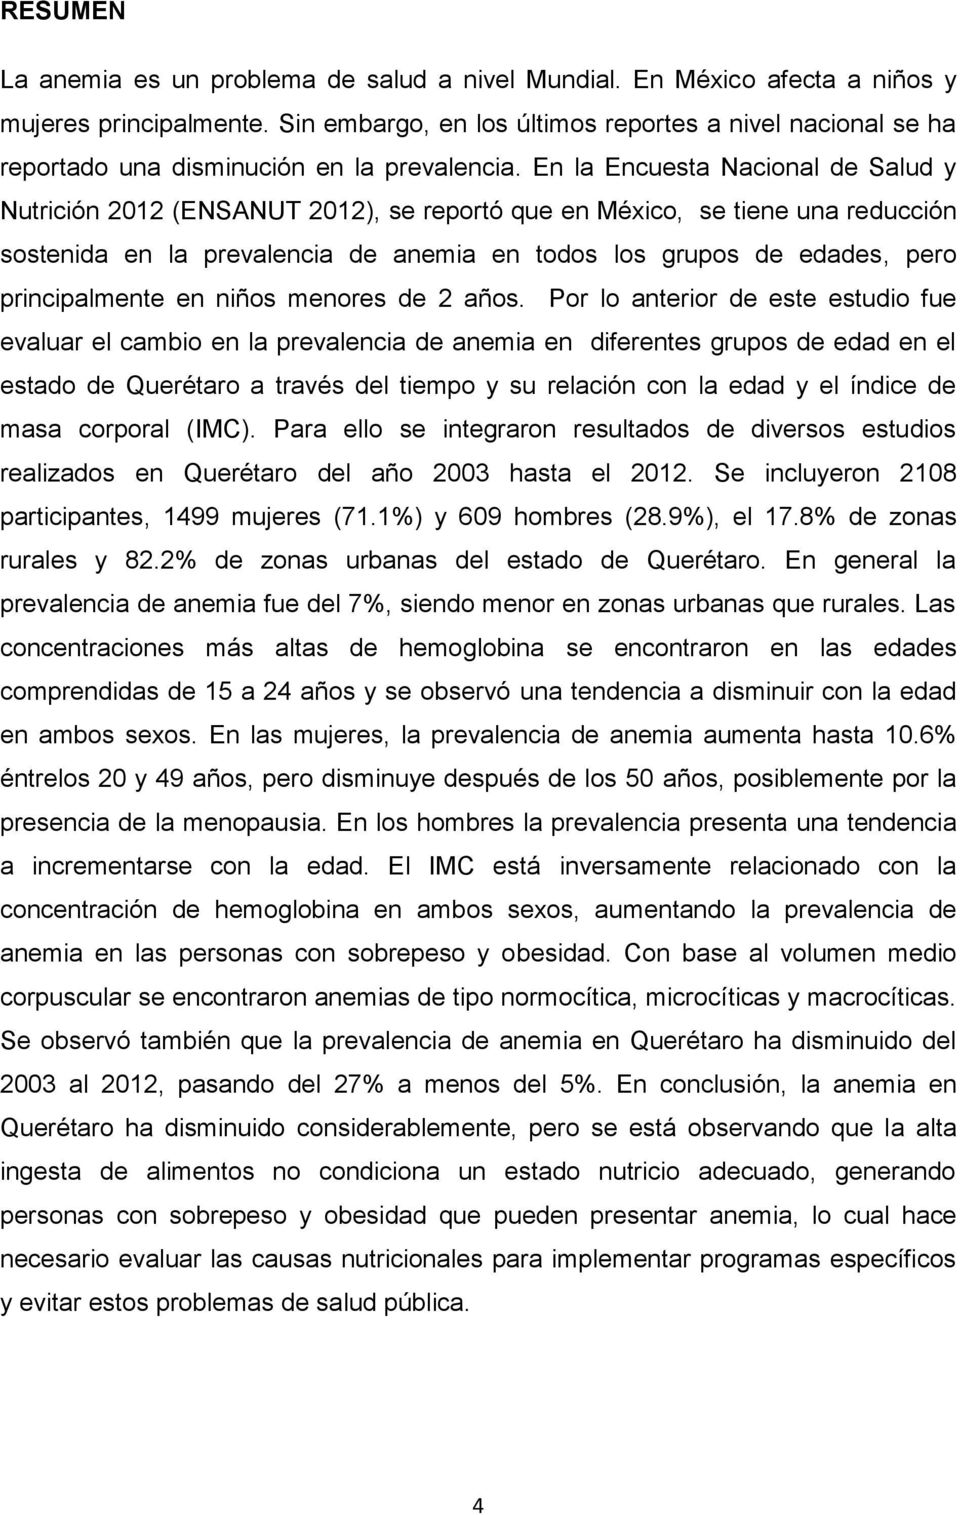 En la Encuesta Nacional de Salud y Nutrición 2012 (ENSANUT 2012), se reportó que en México, se tiene una reducción sostenida en la prevalencia de anemia en todos los grupos de edades, pero